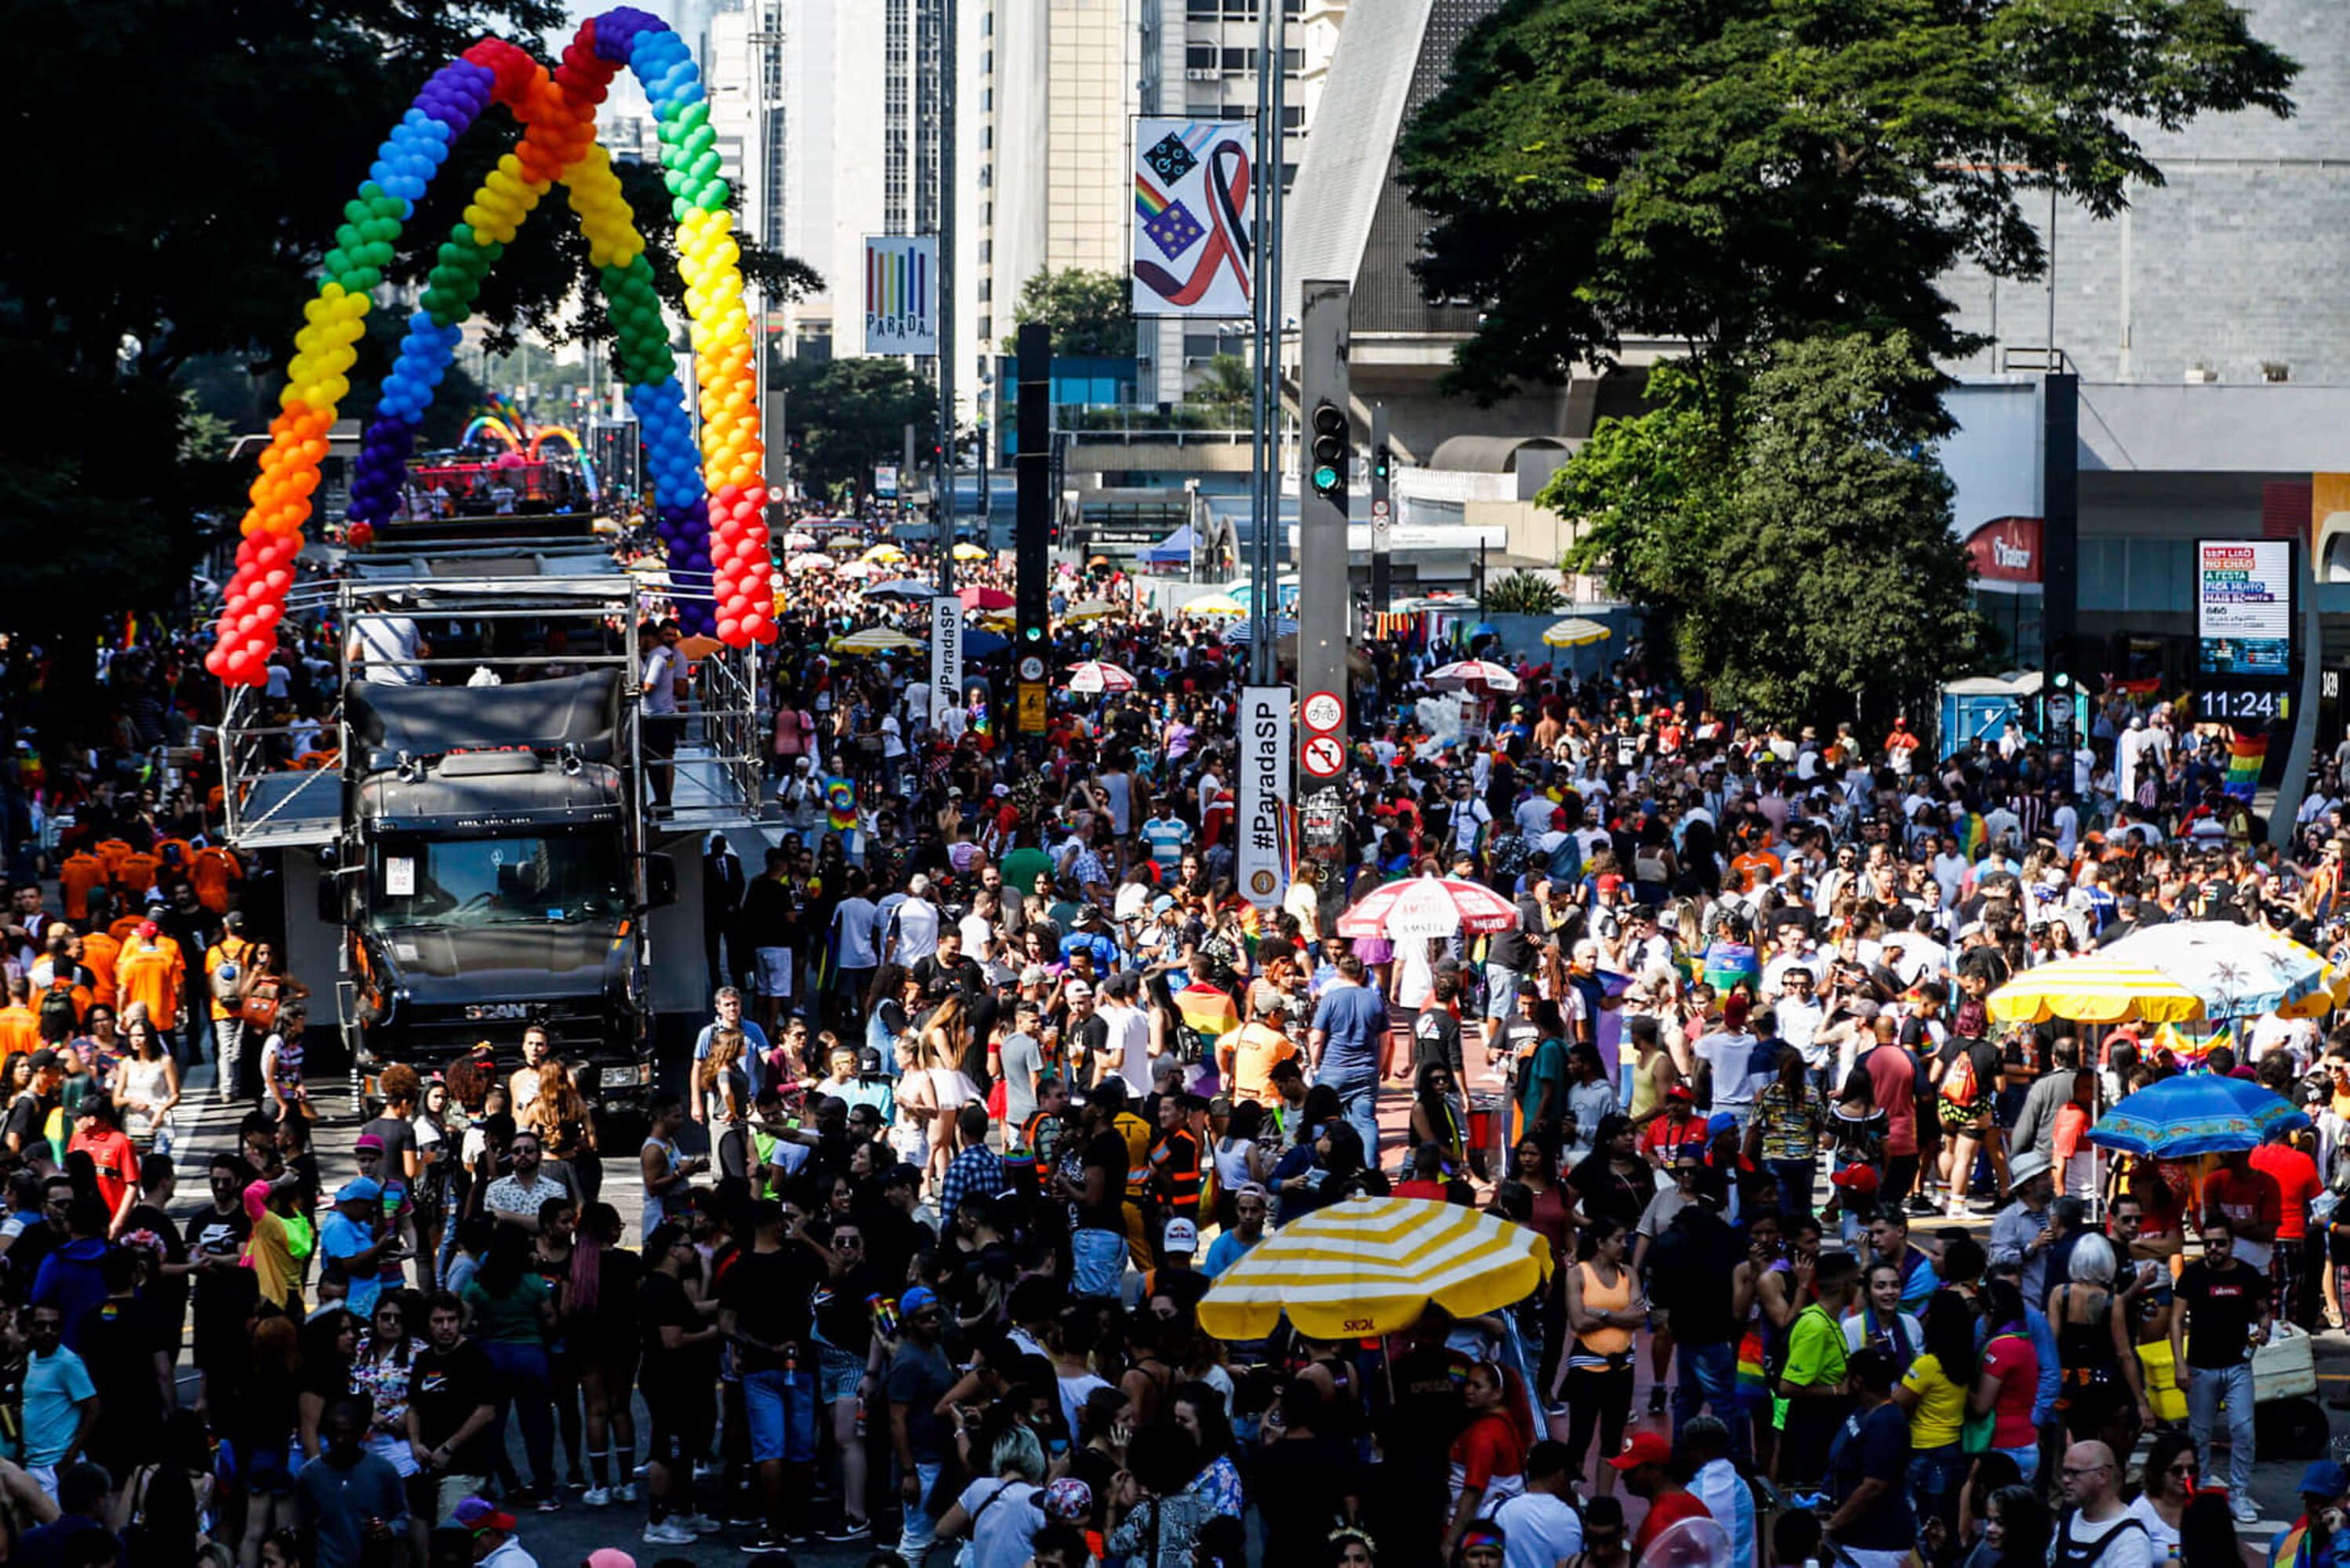 O evento, que movimentou R$ 288 milhões no ano passado, espera atrair 3 milhões de pessoas em 2019. Foto: Carla Carniel/Código19/Agência O Globo